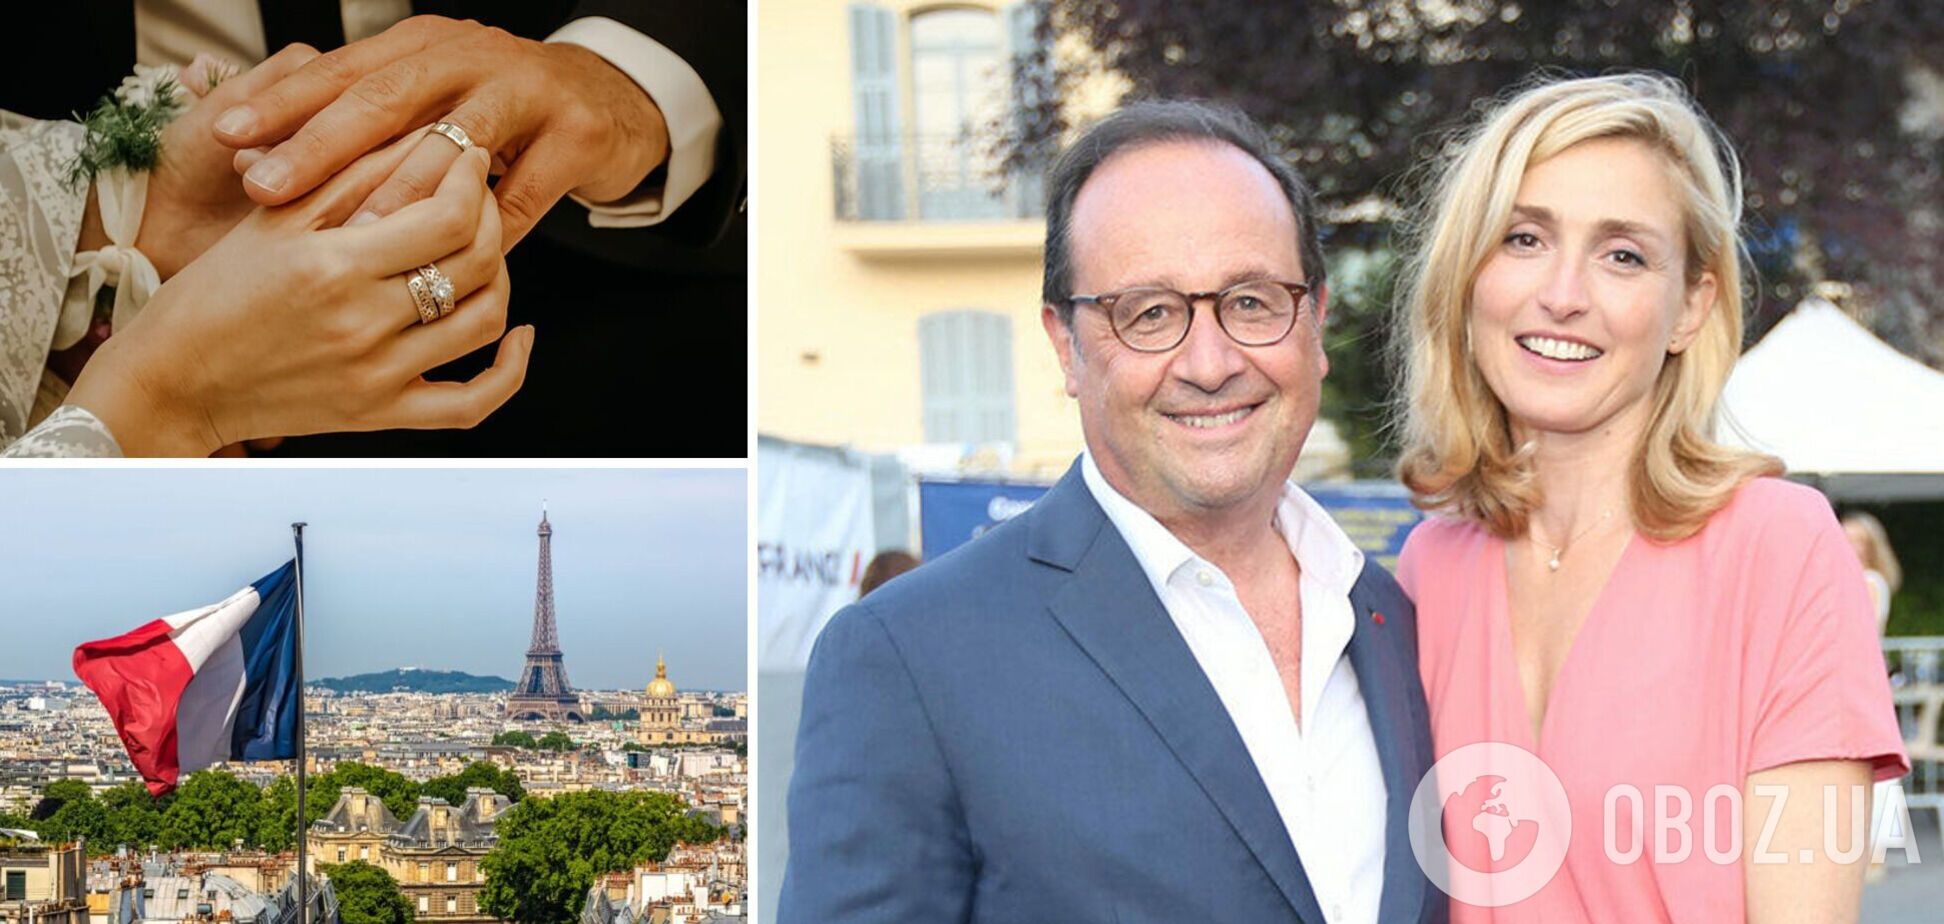 Колишній президент Франції Франсуа Олланд вперше одружився у 67 років. Як виглядає його обраниця-акторка